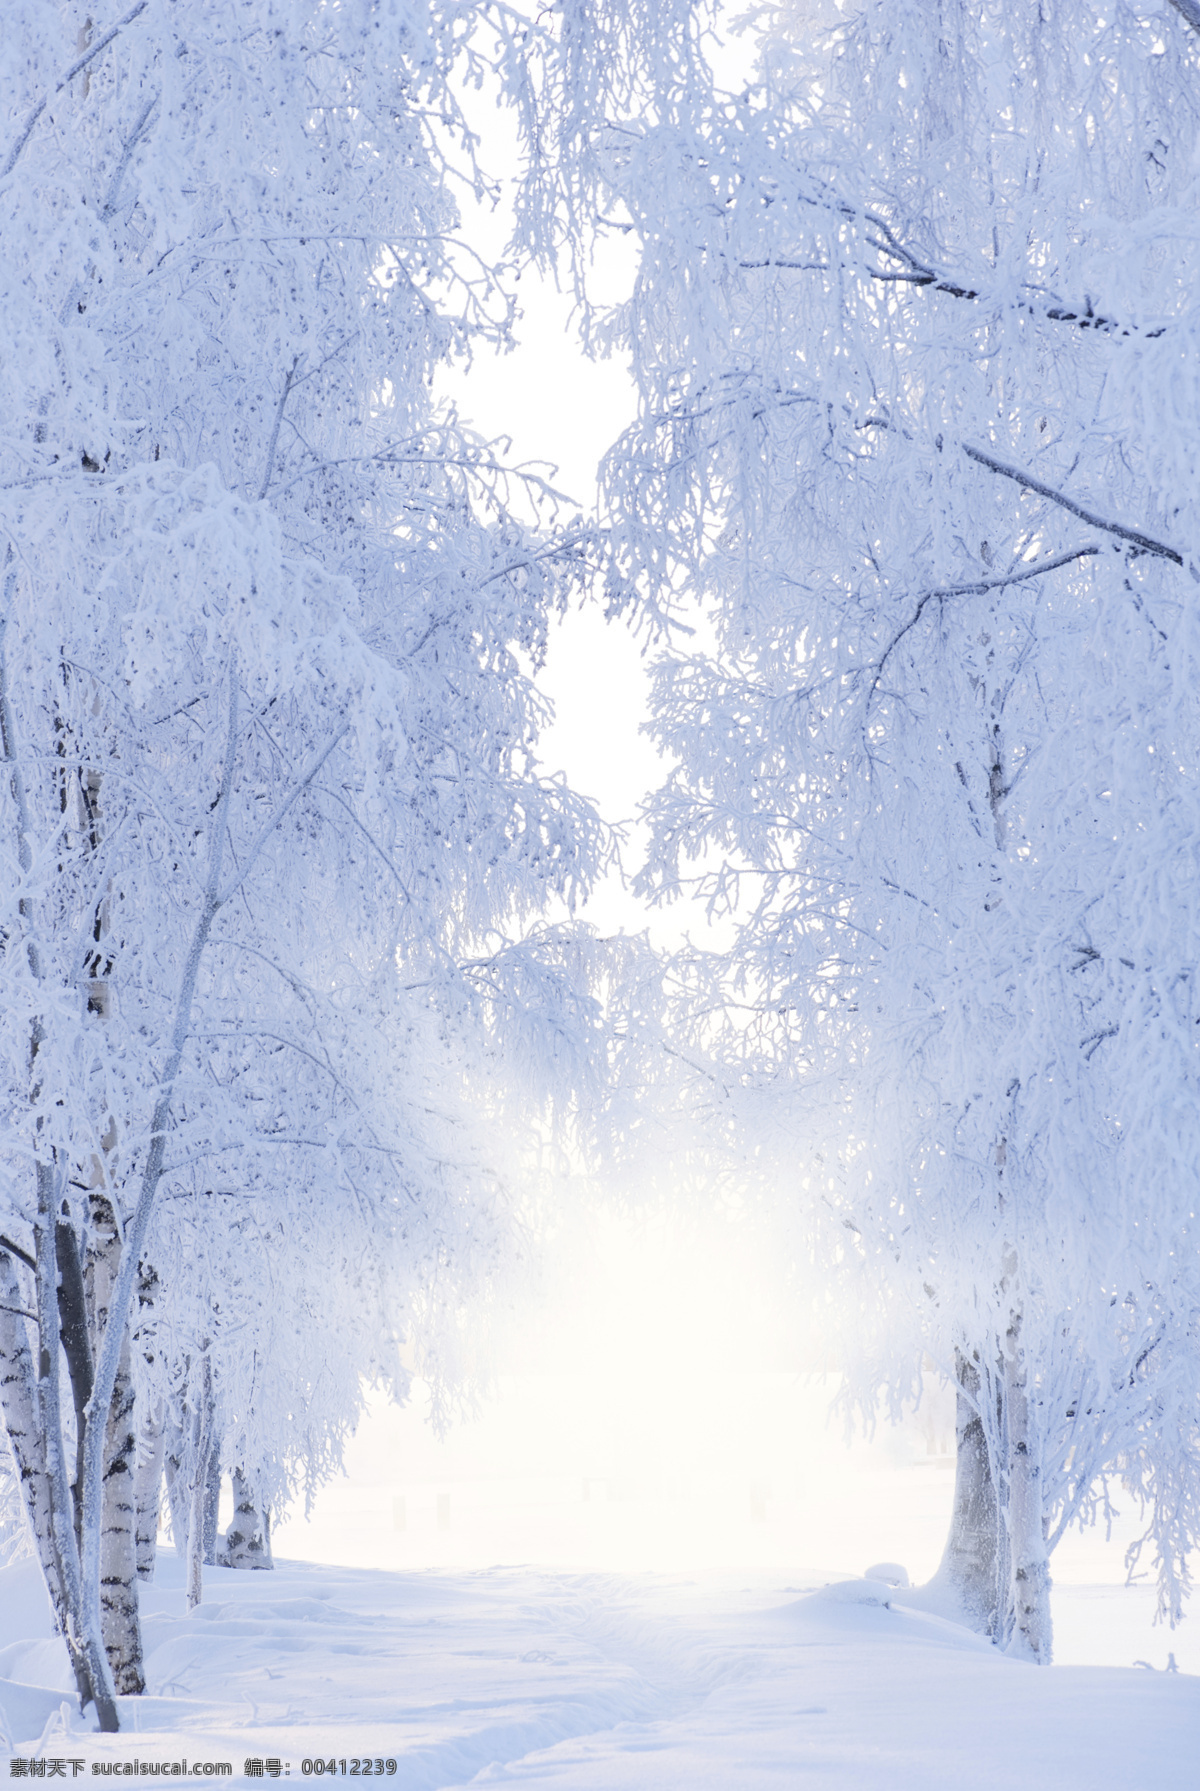 冬天 风光 背景 植物 大树 道路 冬季 景观 底纹背景 圣诞节 雪景 雪地 自然风景 自然景观 白色